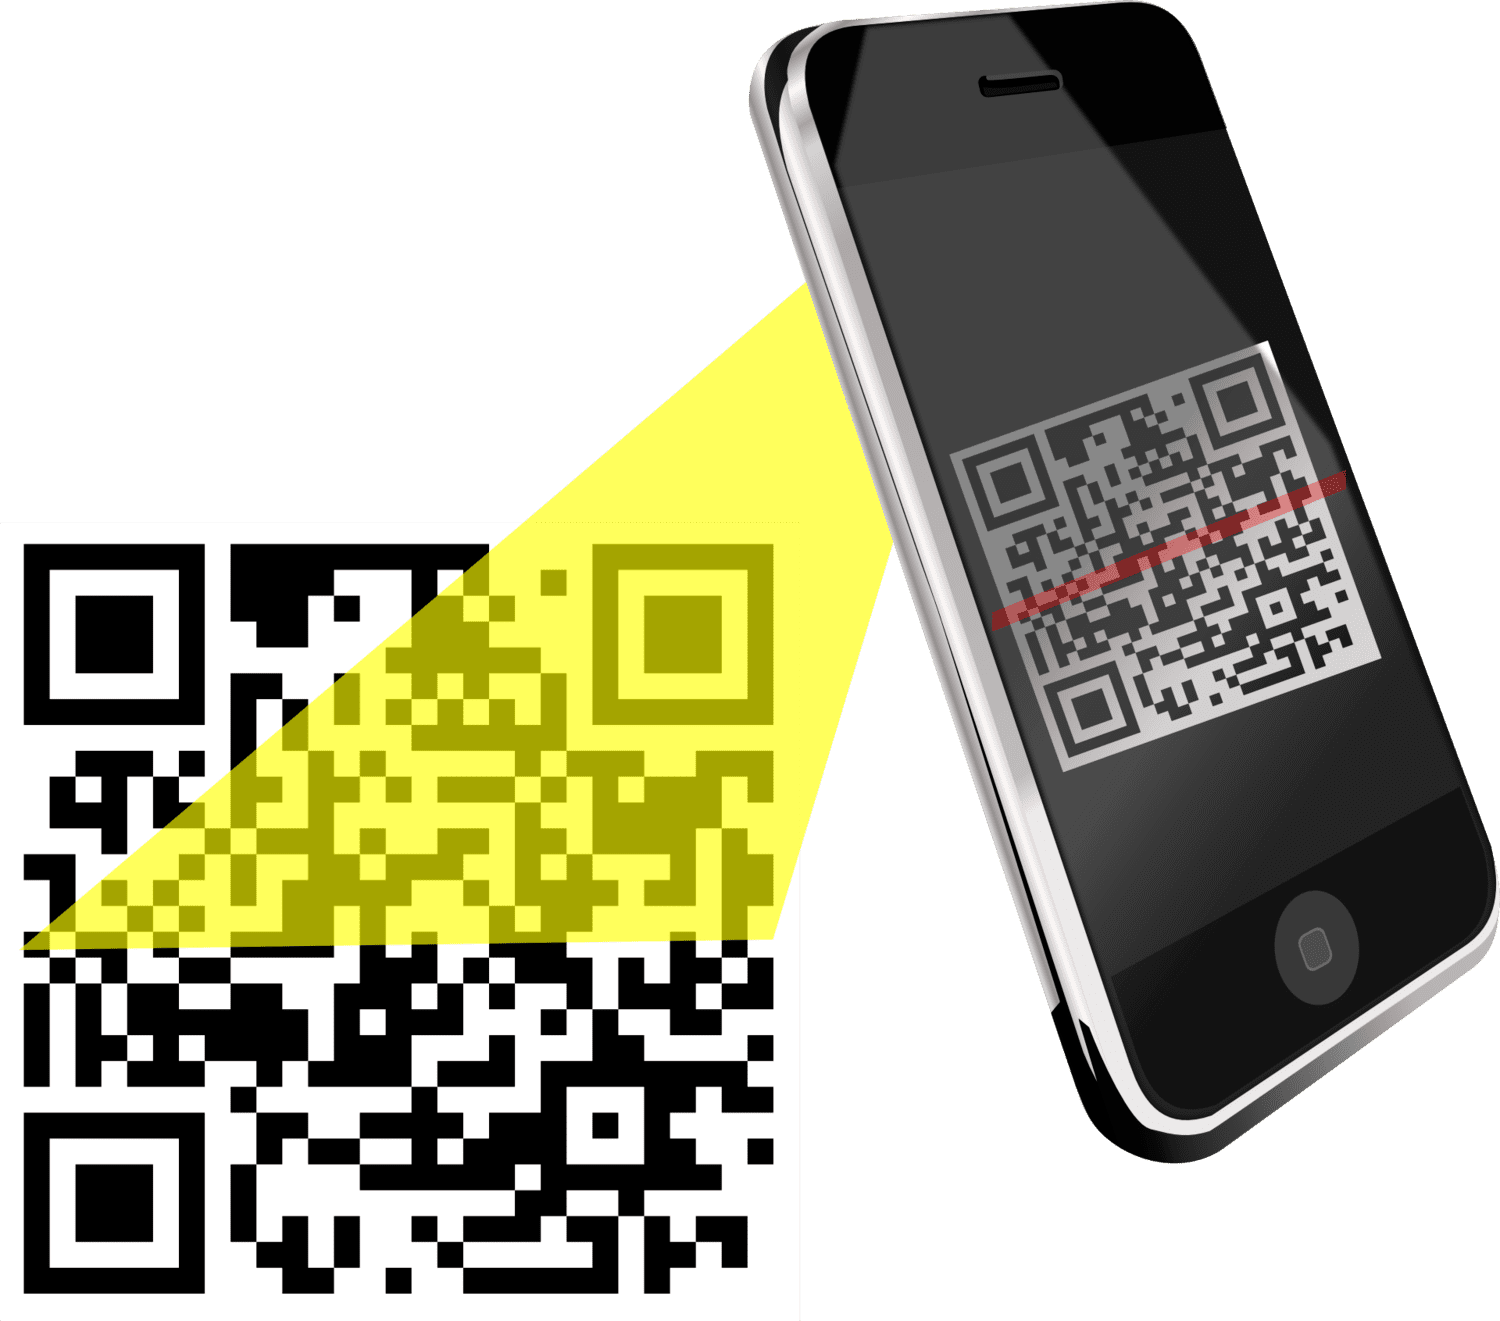 lire un QR code sur smartphone iPhone